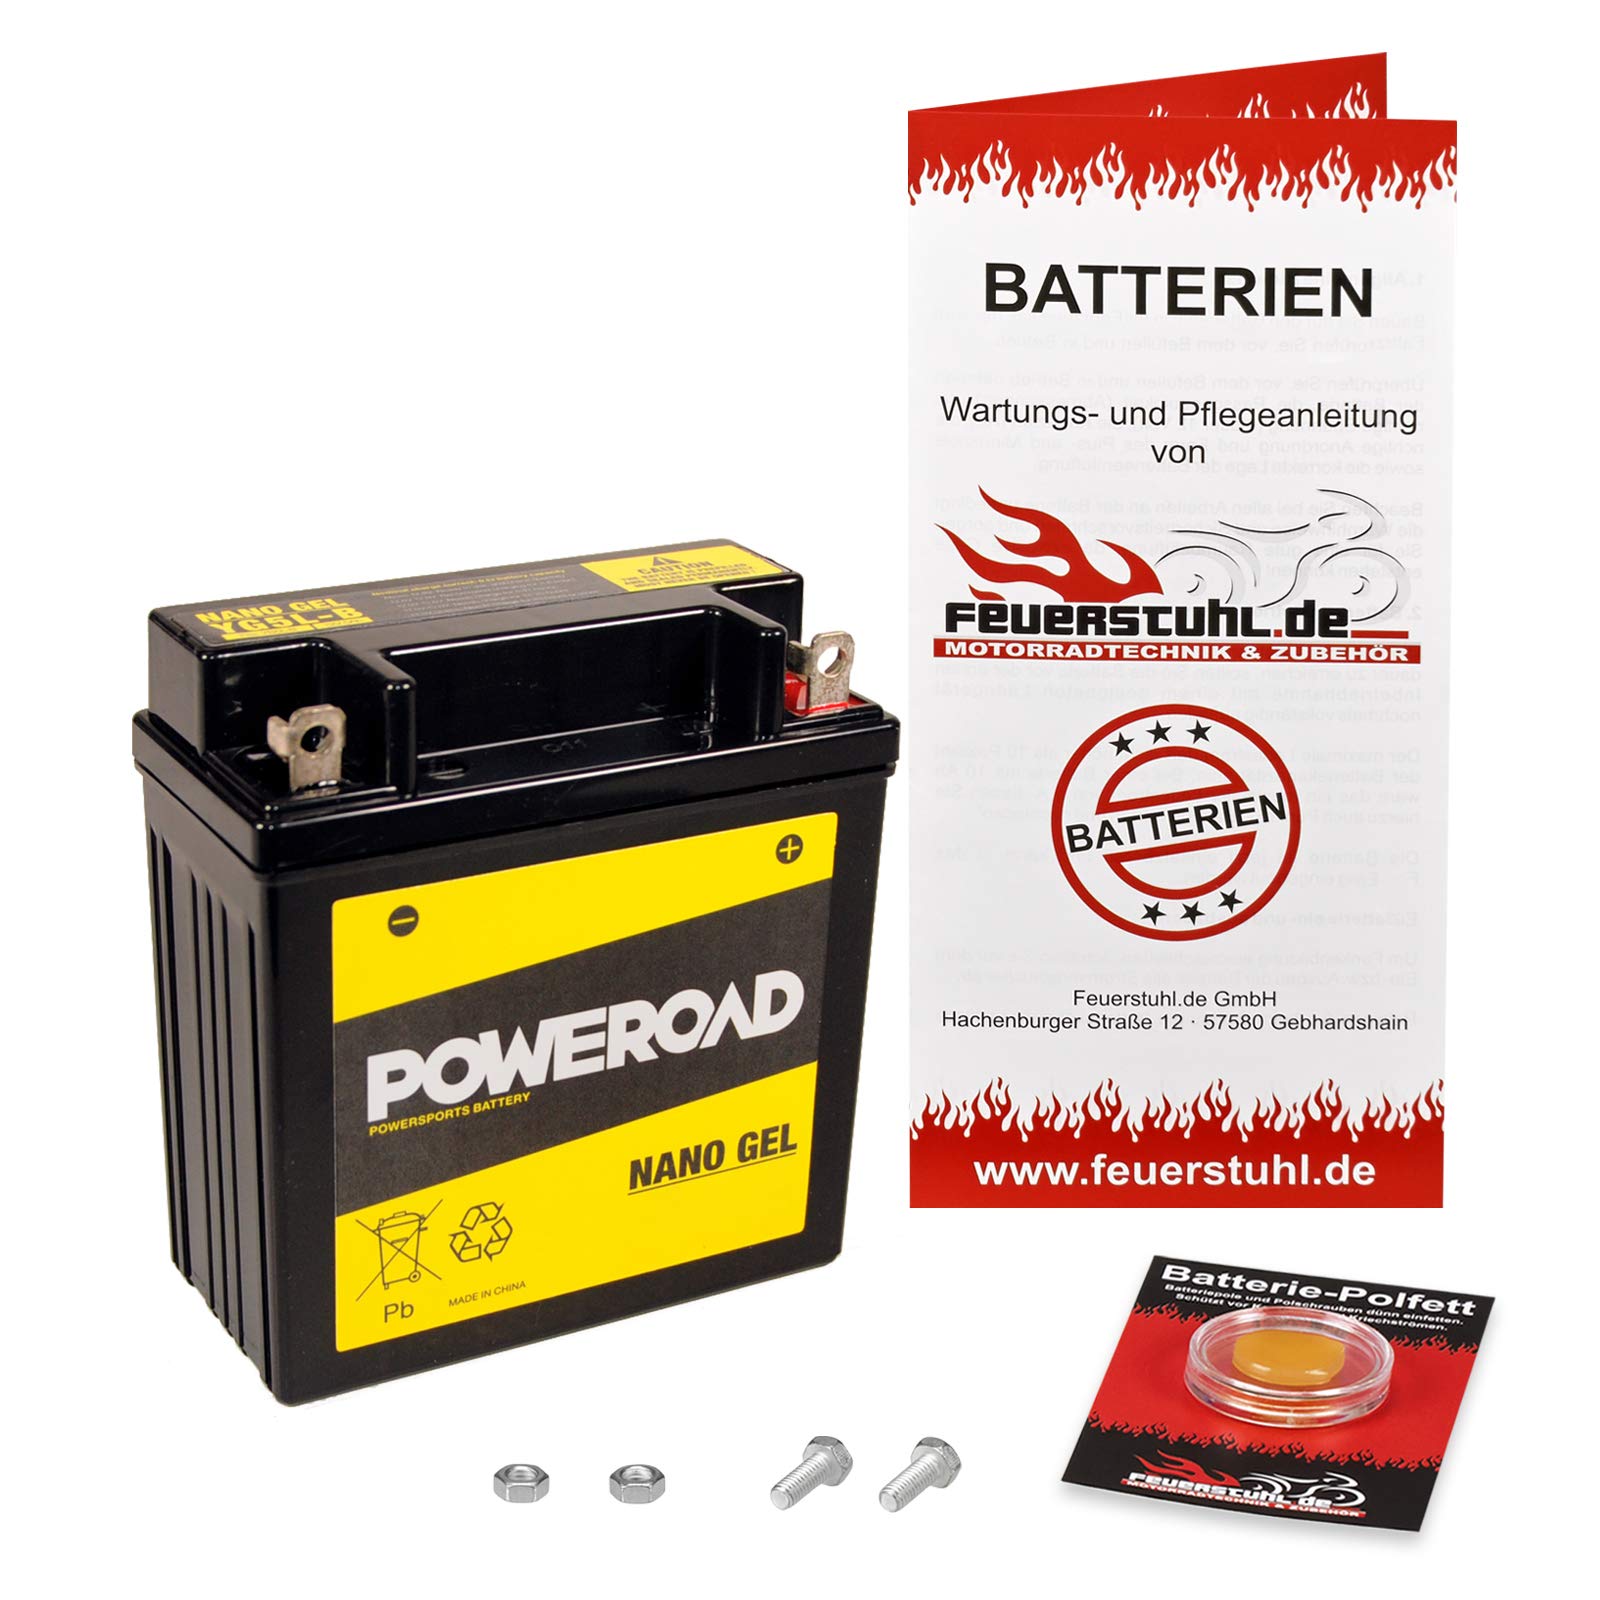 Gel-Batterie MSX 125, 2013-2016 (JC61) wartungsfrei, einbaufertig, startklar, inkl. 7,50€ Pfand von Feuerstuhl.de GmbH